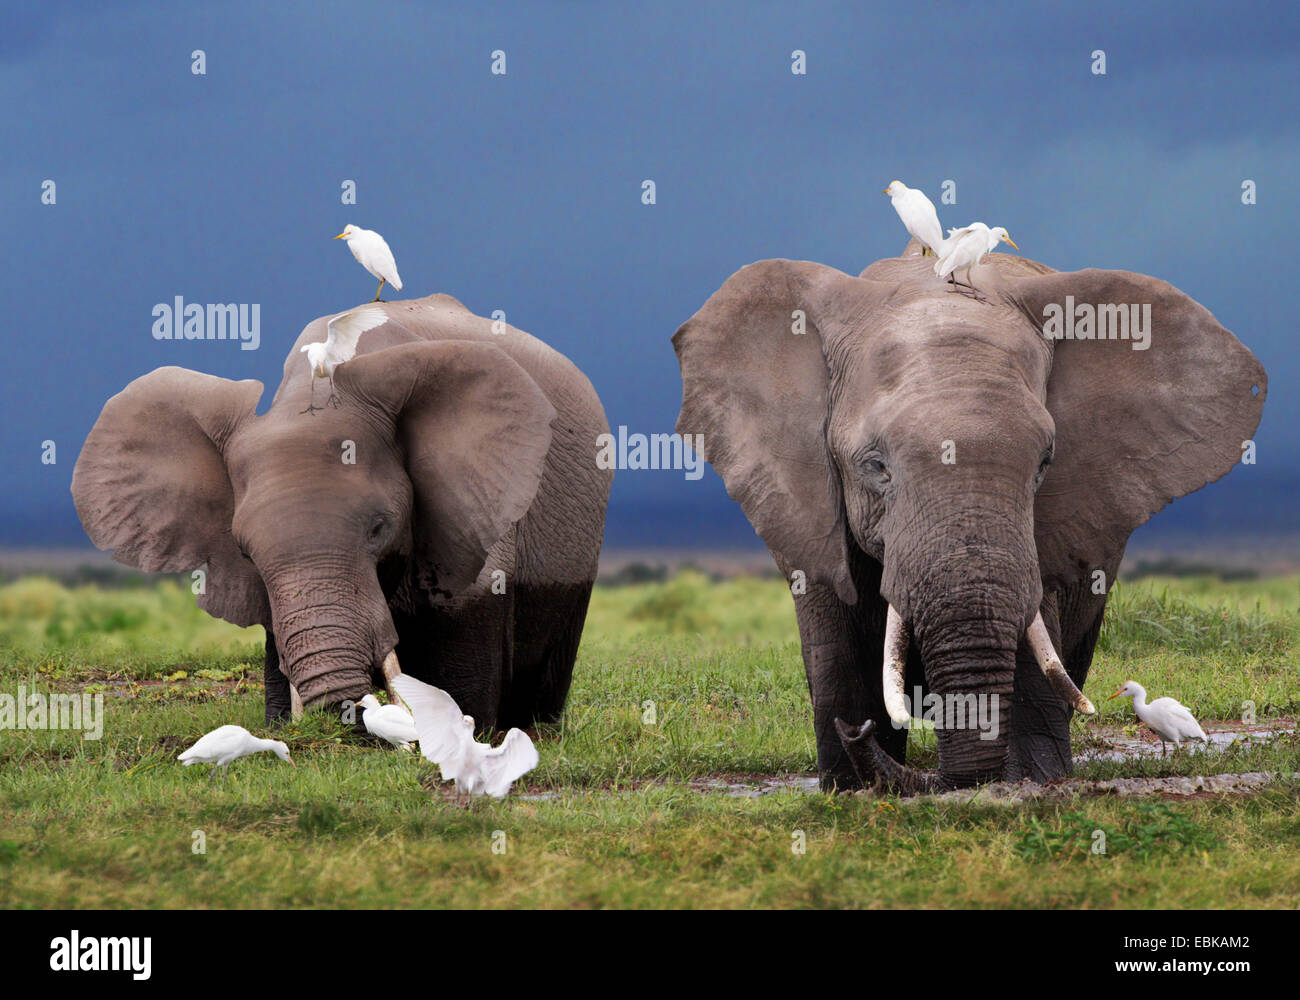 Elefante africano (Loxodonta africana), dos elefantes en alimentación en pantano, Kenya, el Parque Nacional de Amboseli Foto de stock